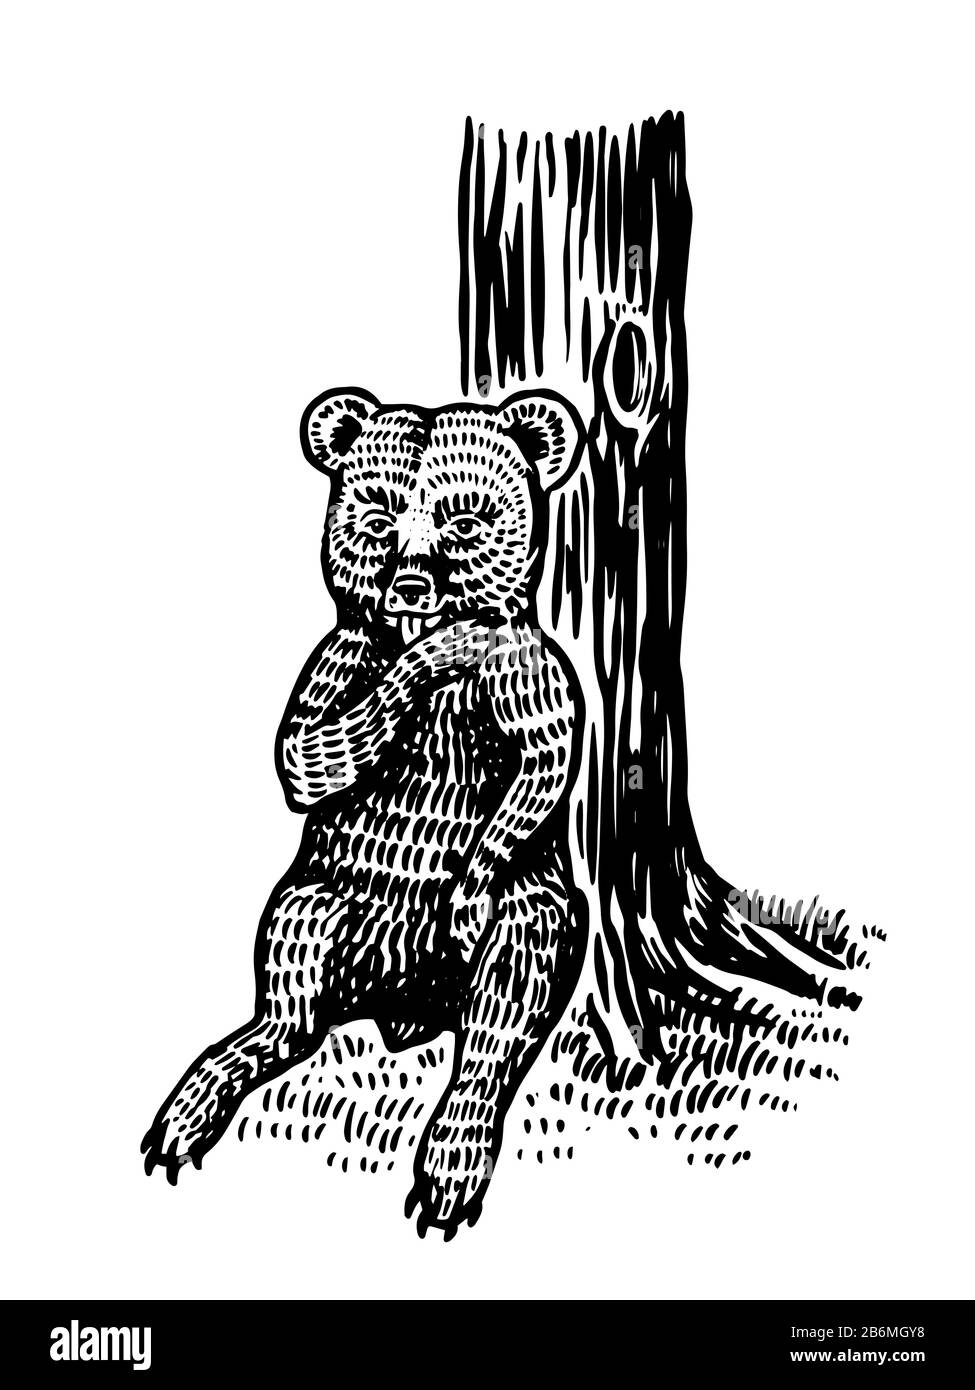 Bébé petit ours assis près de l'arbre et réglisse sa patte. Grizzli sauvage brun. Ancienne esquisse gravée à la main pour T-shirt, tatouage ou étiquette ou affiche Illustration de Vecteur